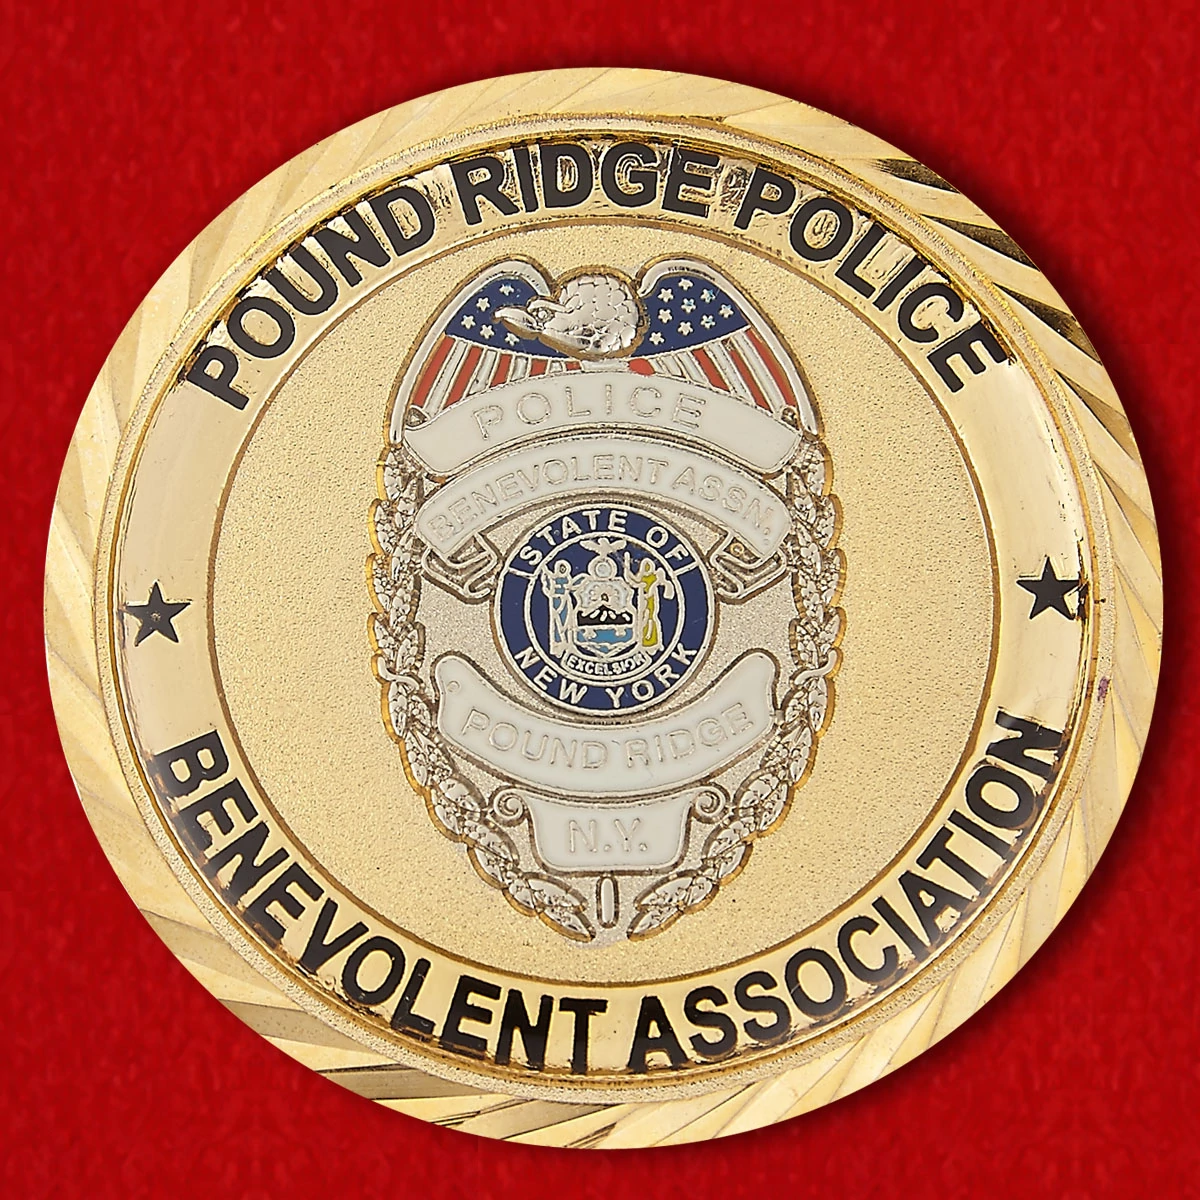 Police Benevolent Association Pound Ridge Challenge Сoin